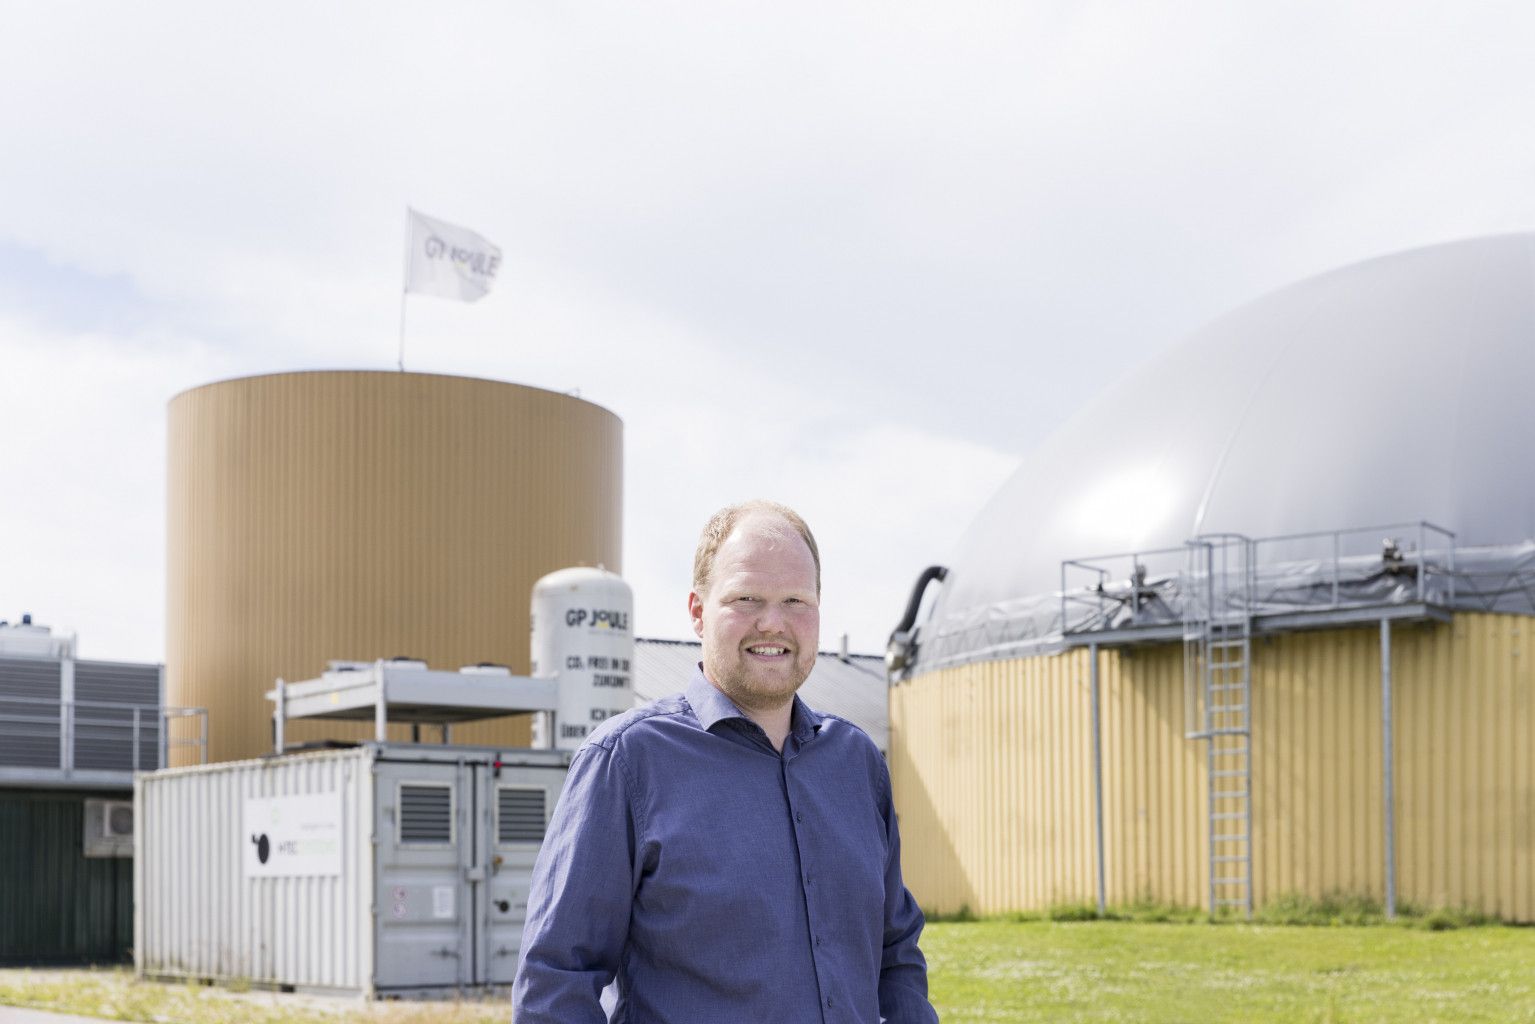 Sören Sönksen ist Betreiber einer Biogas Anlage in Nordfriesland.